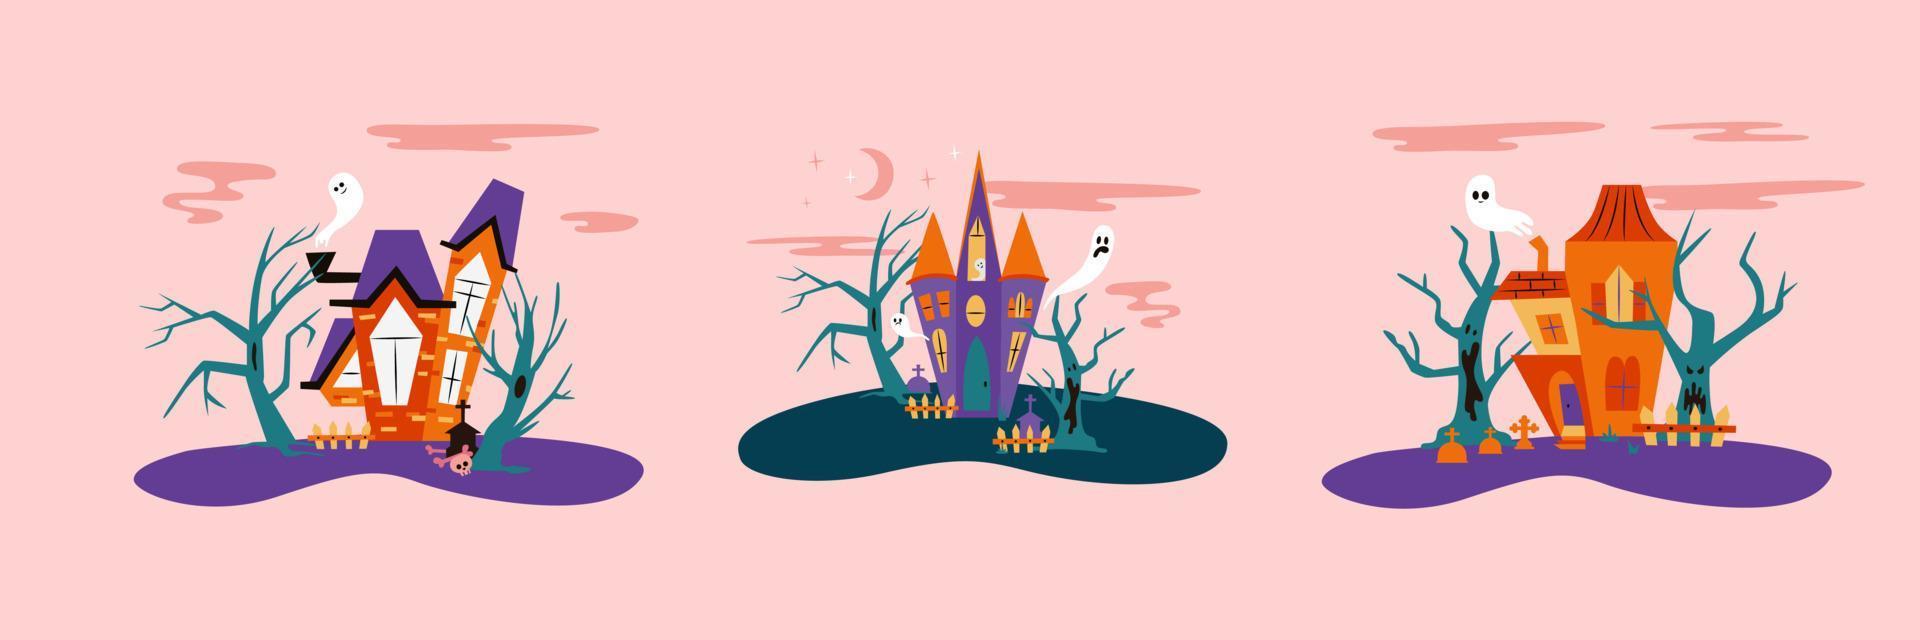 halloween opgejaagd huizen reeks vector illustratie met spookachtig bomen en geesten. verzameling van eng huizen